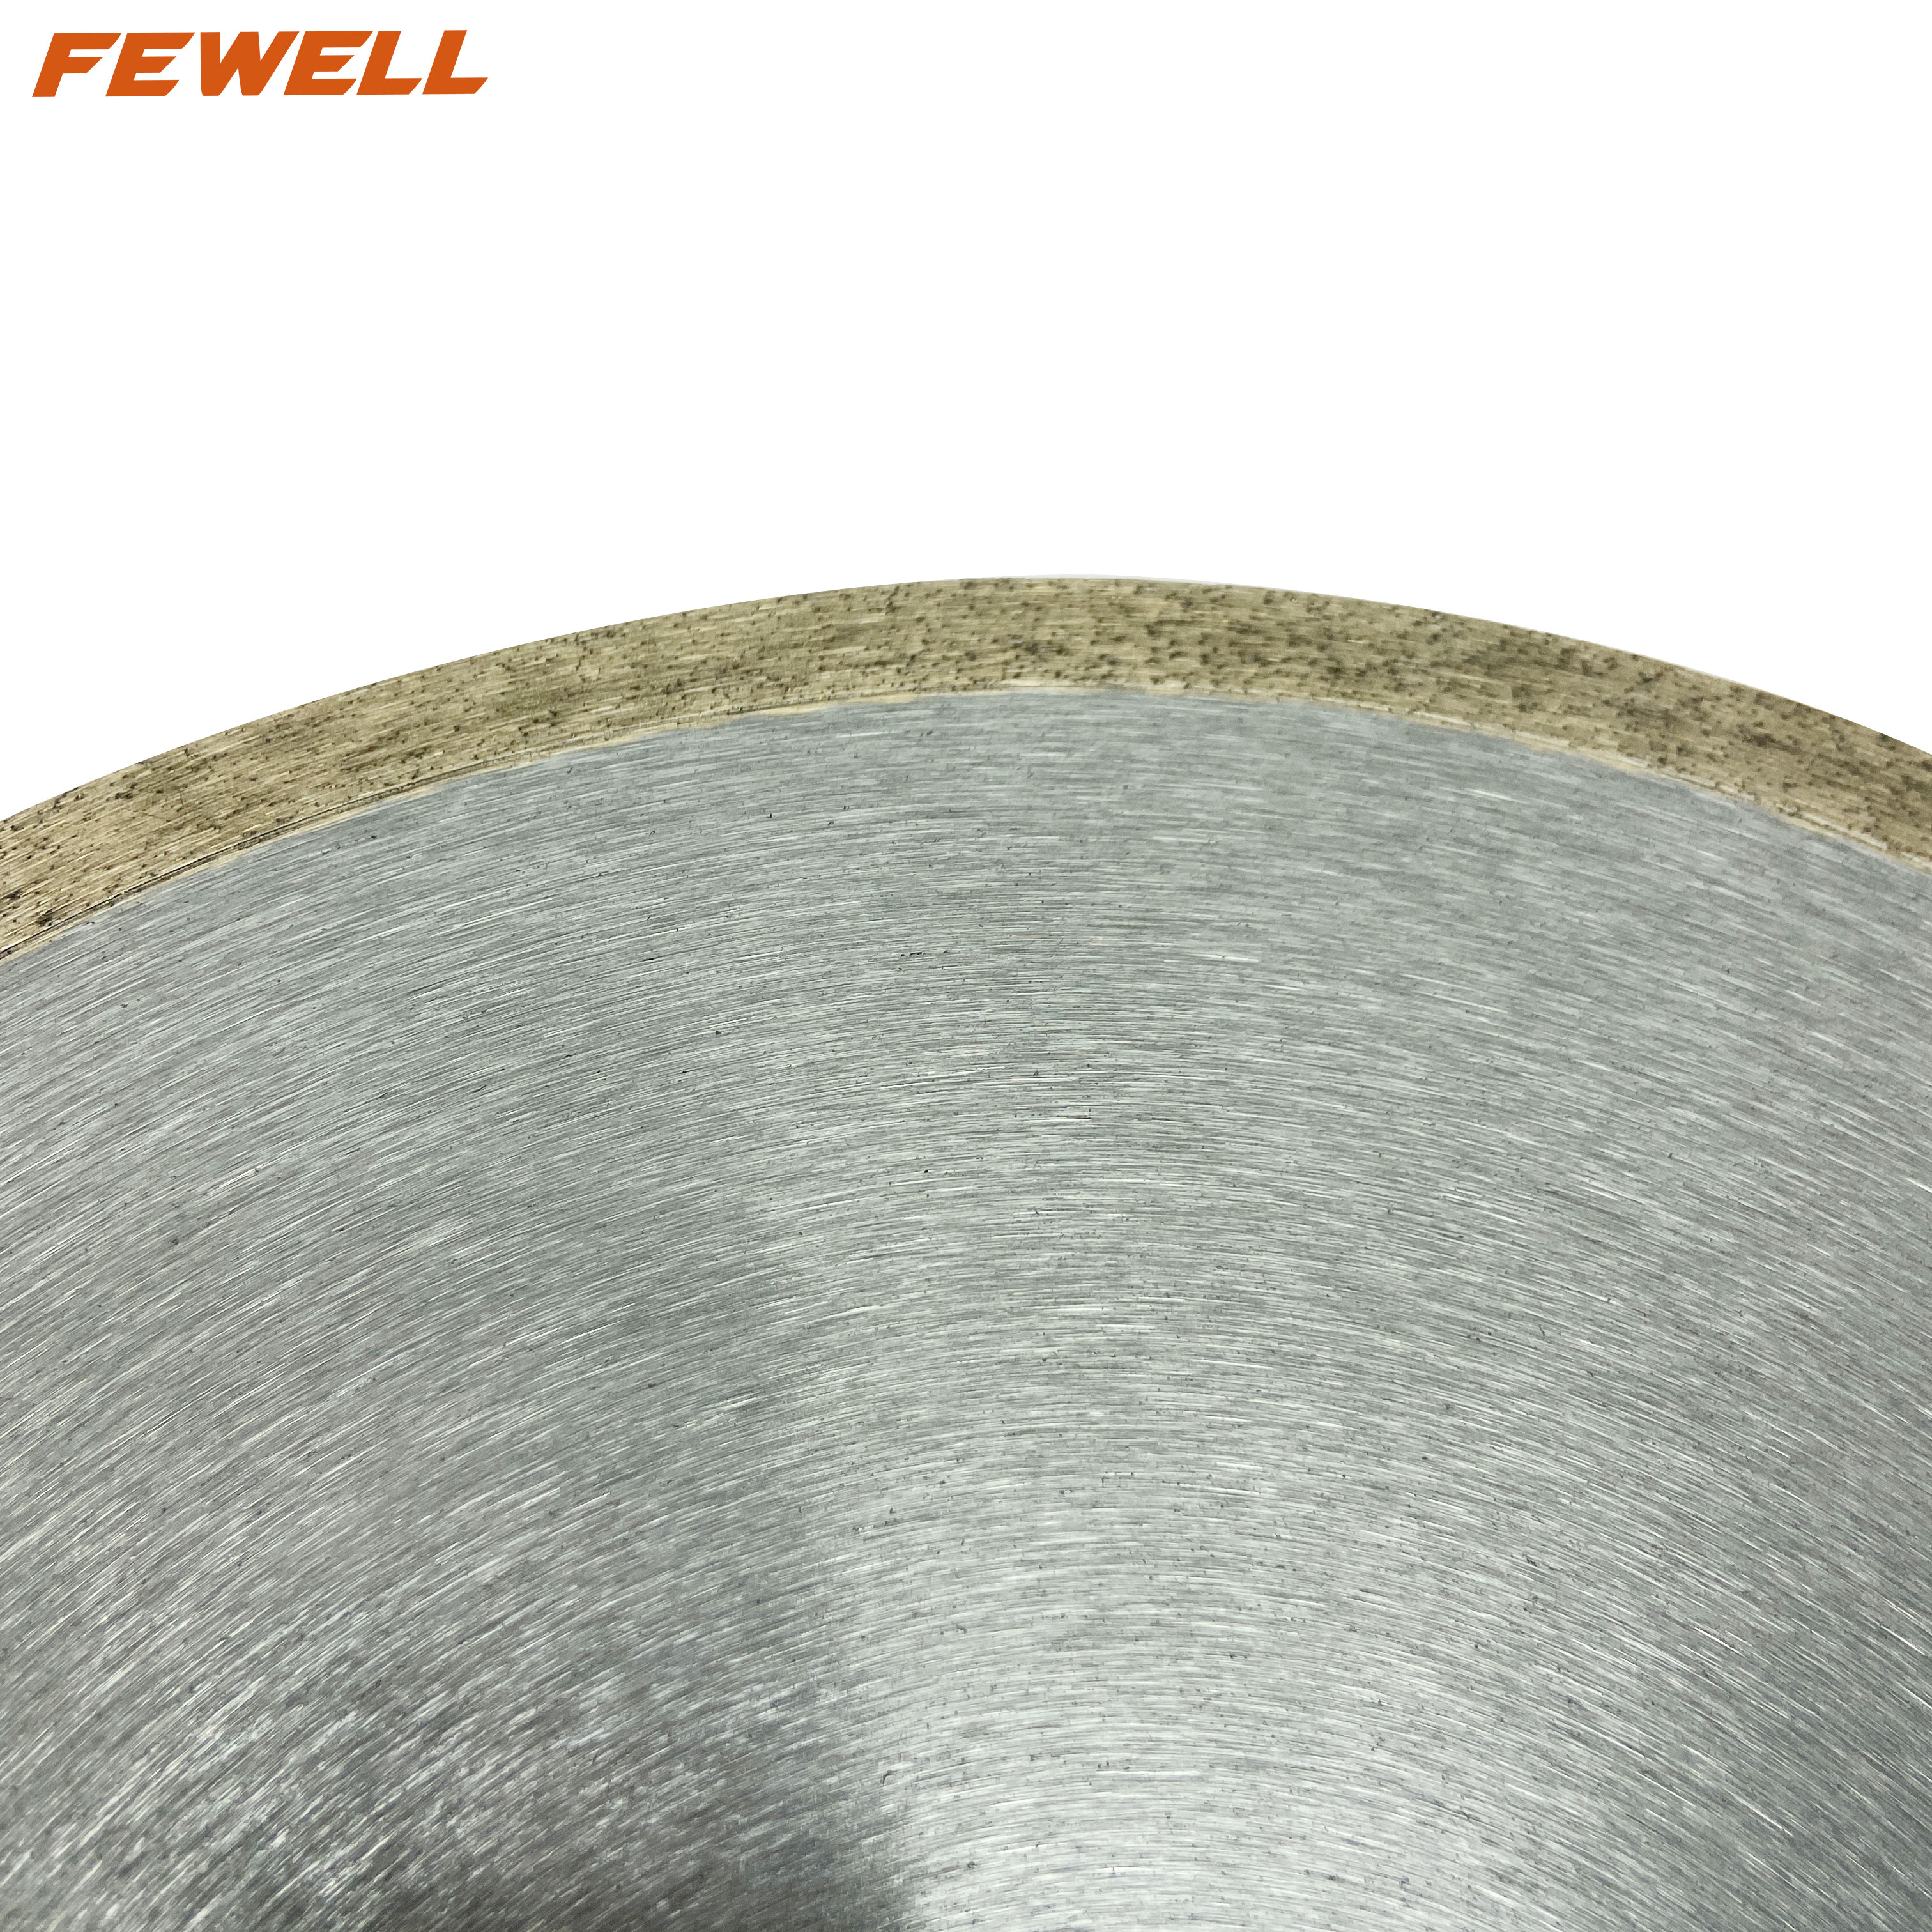 Prensa en caliente de 14 pulgadas sinterizado 300*2,0*10*60mm afilador de borde continuo disco de diamante para cortar baldosas de cerámica porcelana